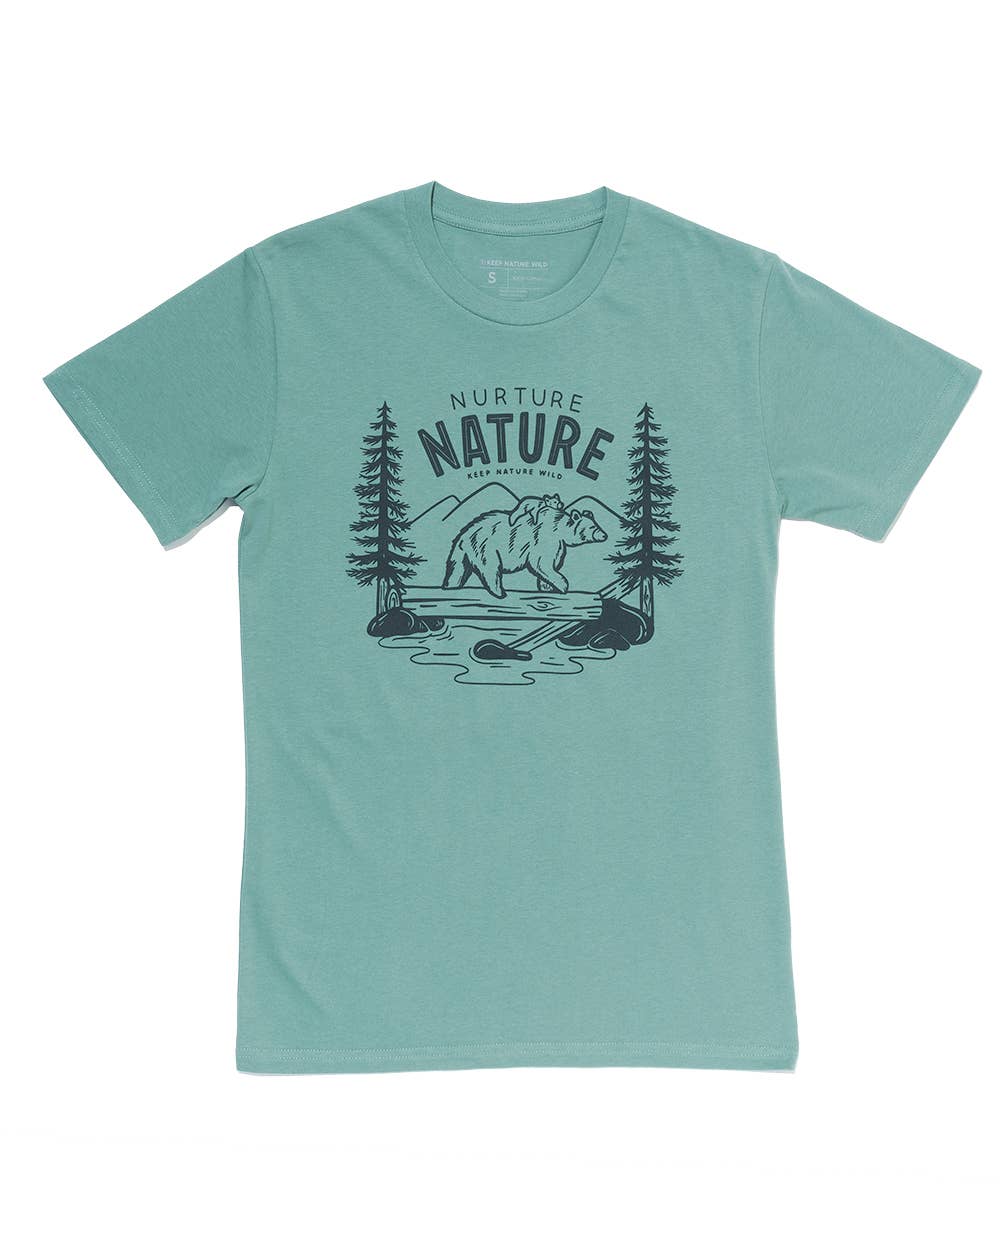 Nurture Nature sage unisex shirt by Keep Nature Wild